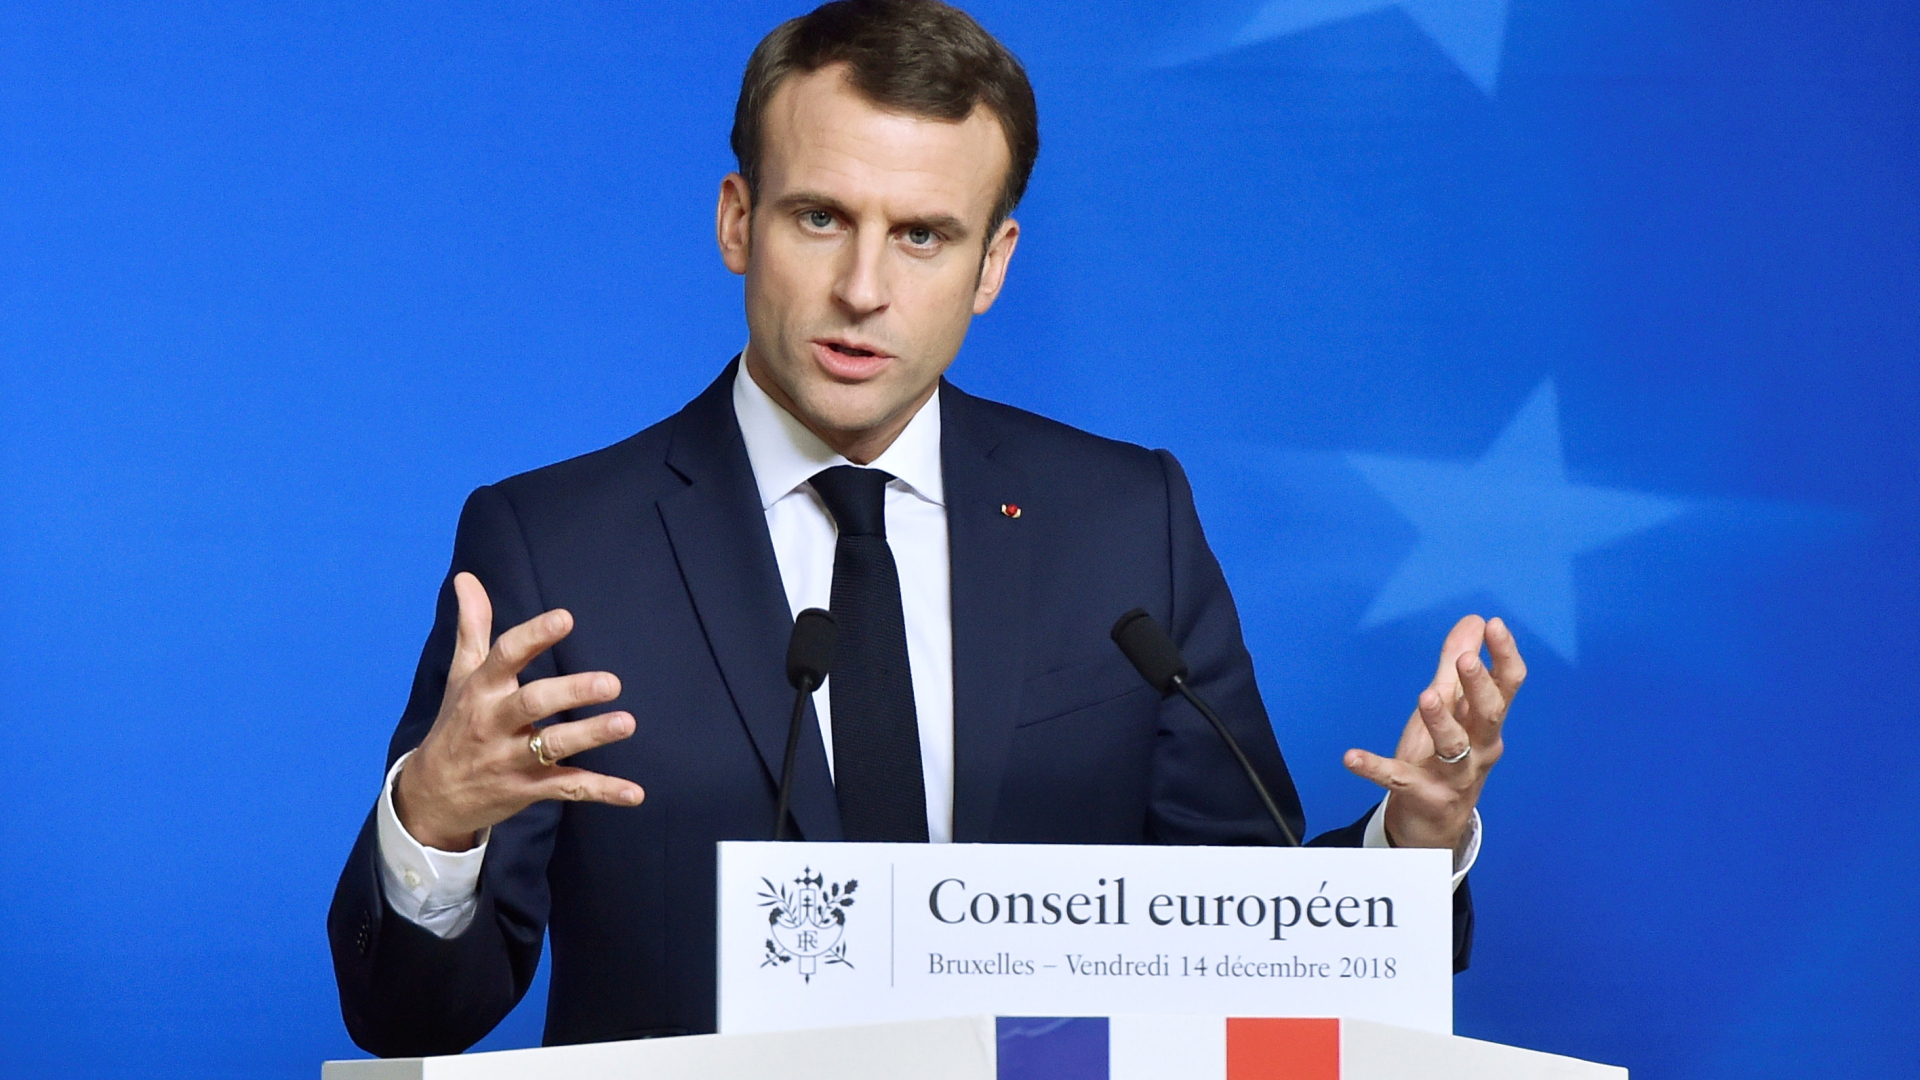 Europäischer Rat: Pressekonferenz des französischen Präsidenten Macron | Bildquelle: REUTERS